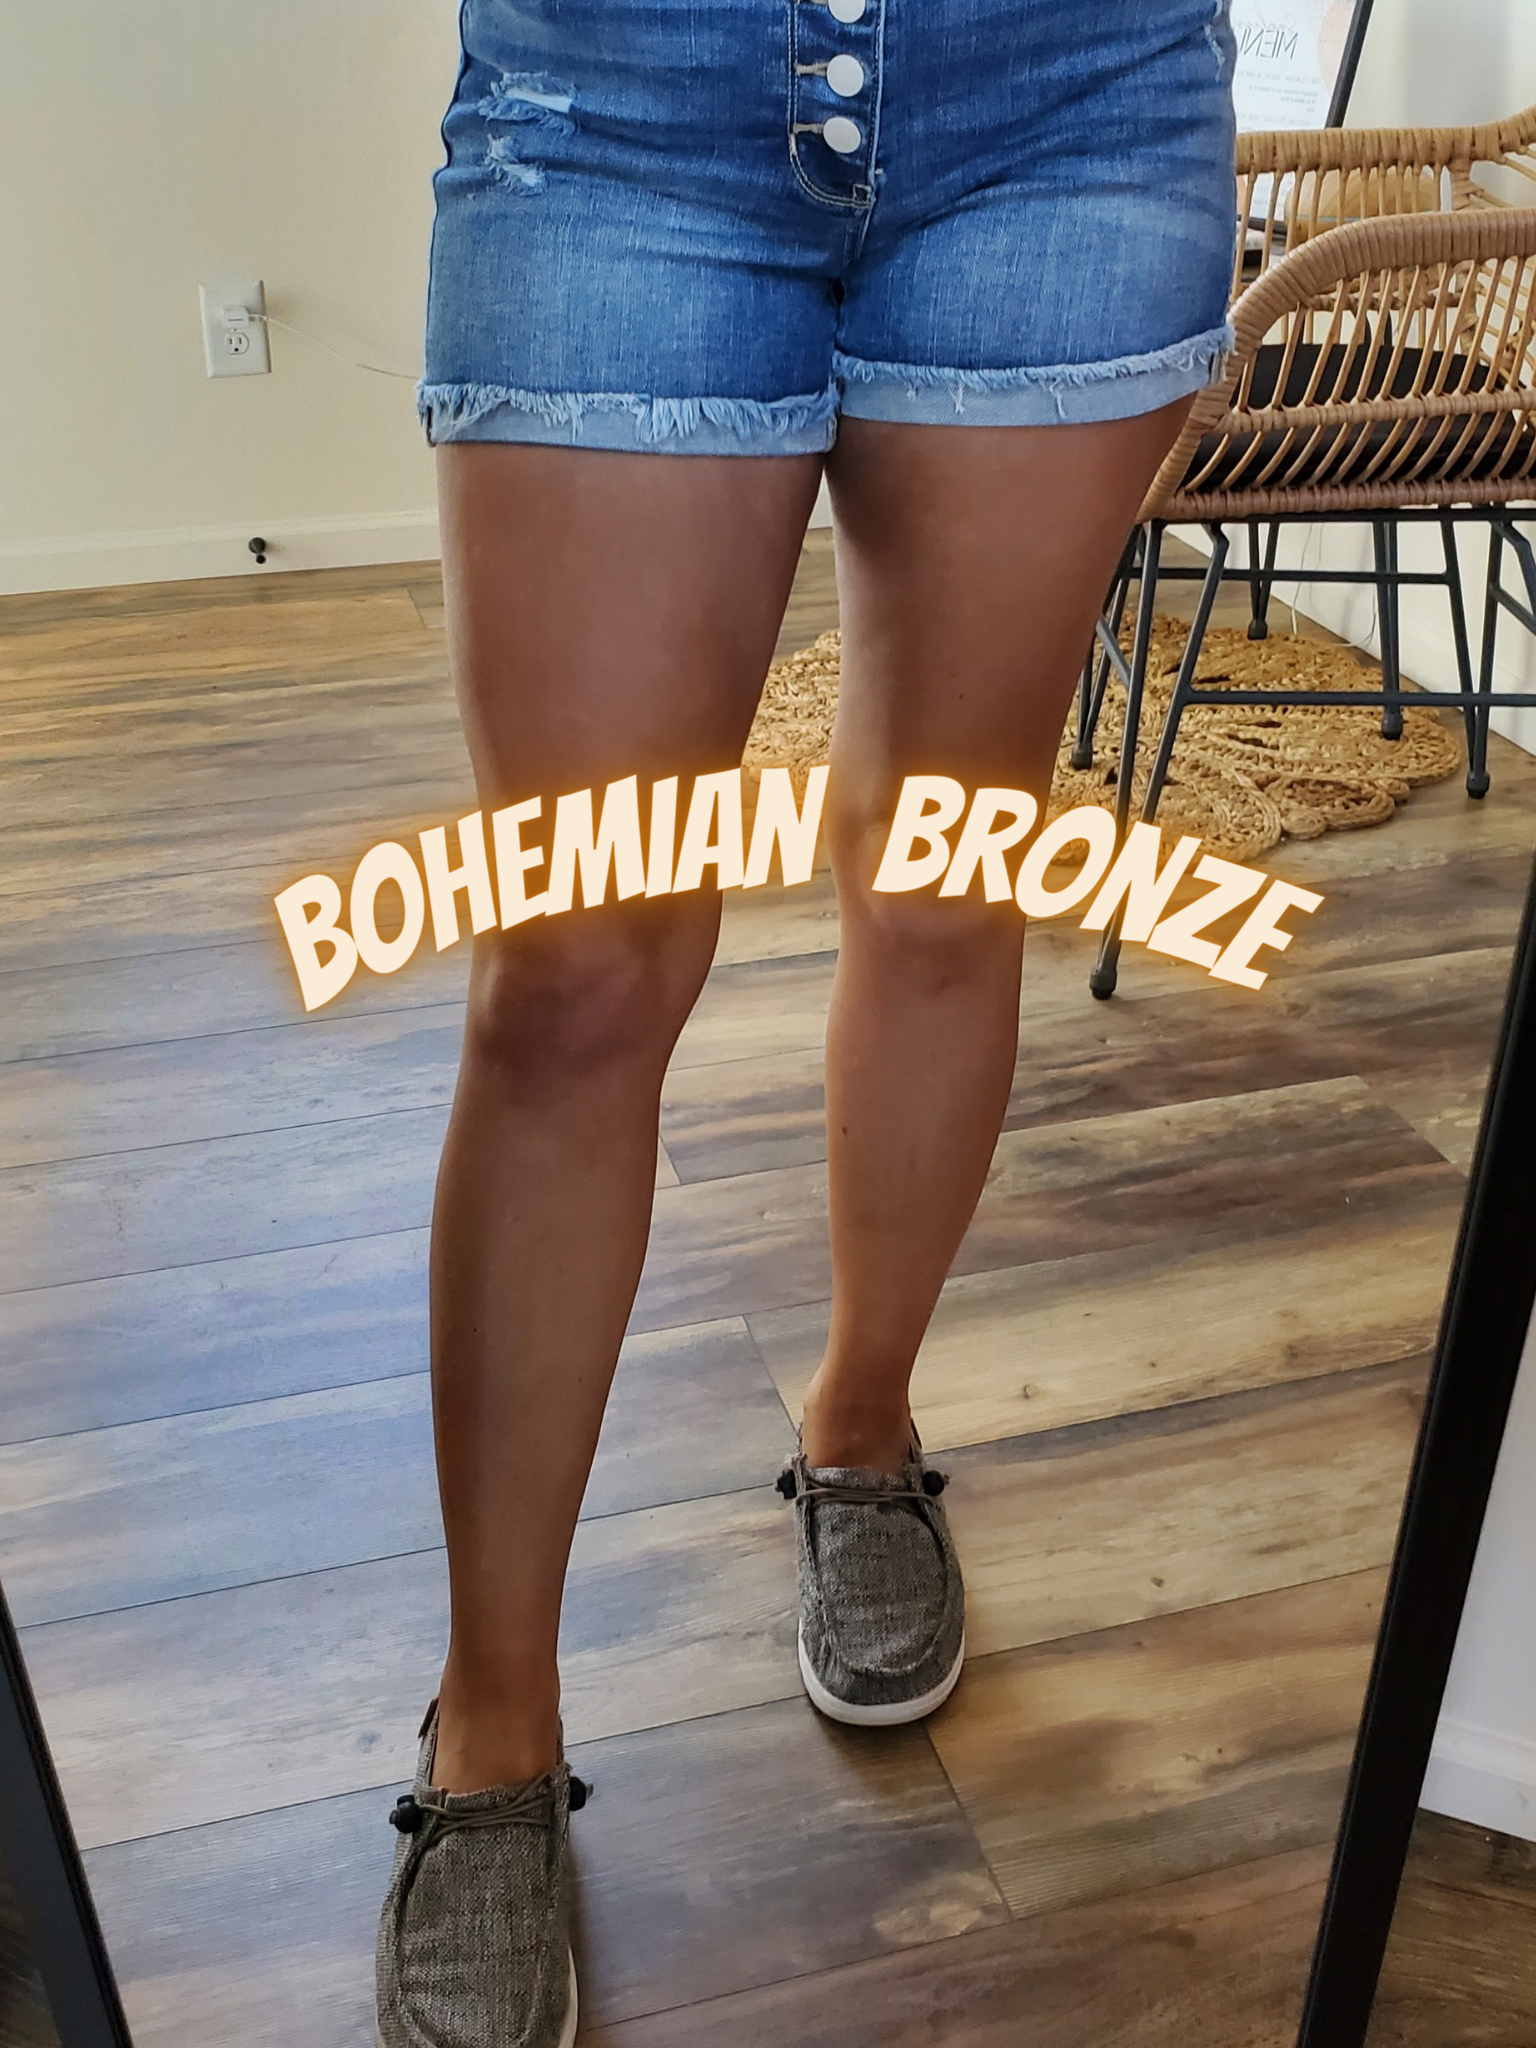 Bohemian Bronze Self-Tanner